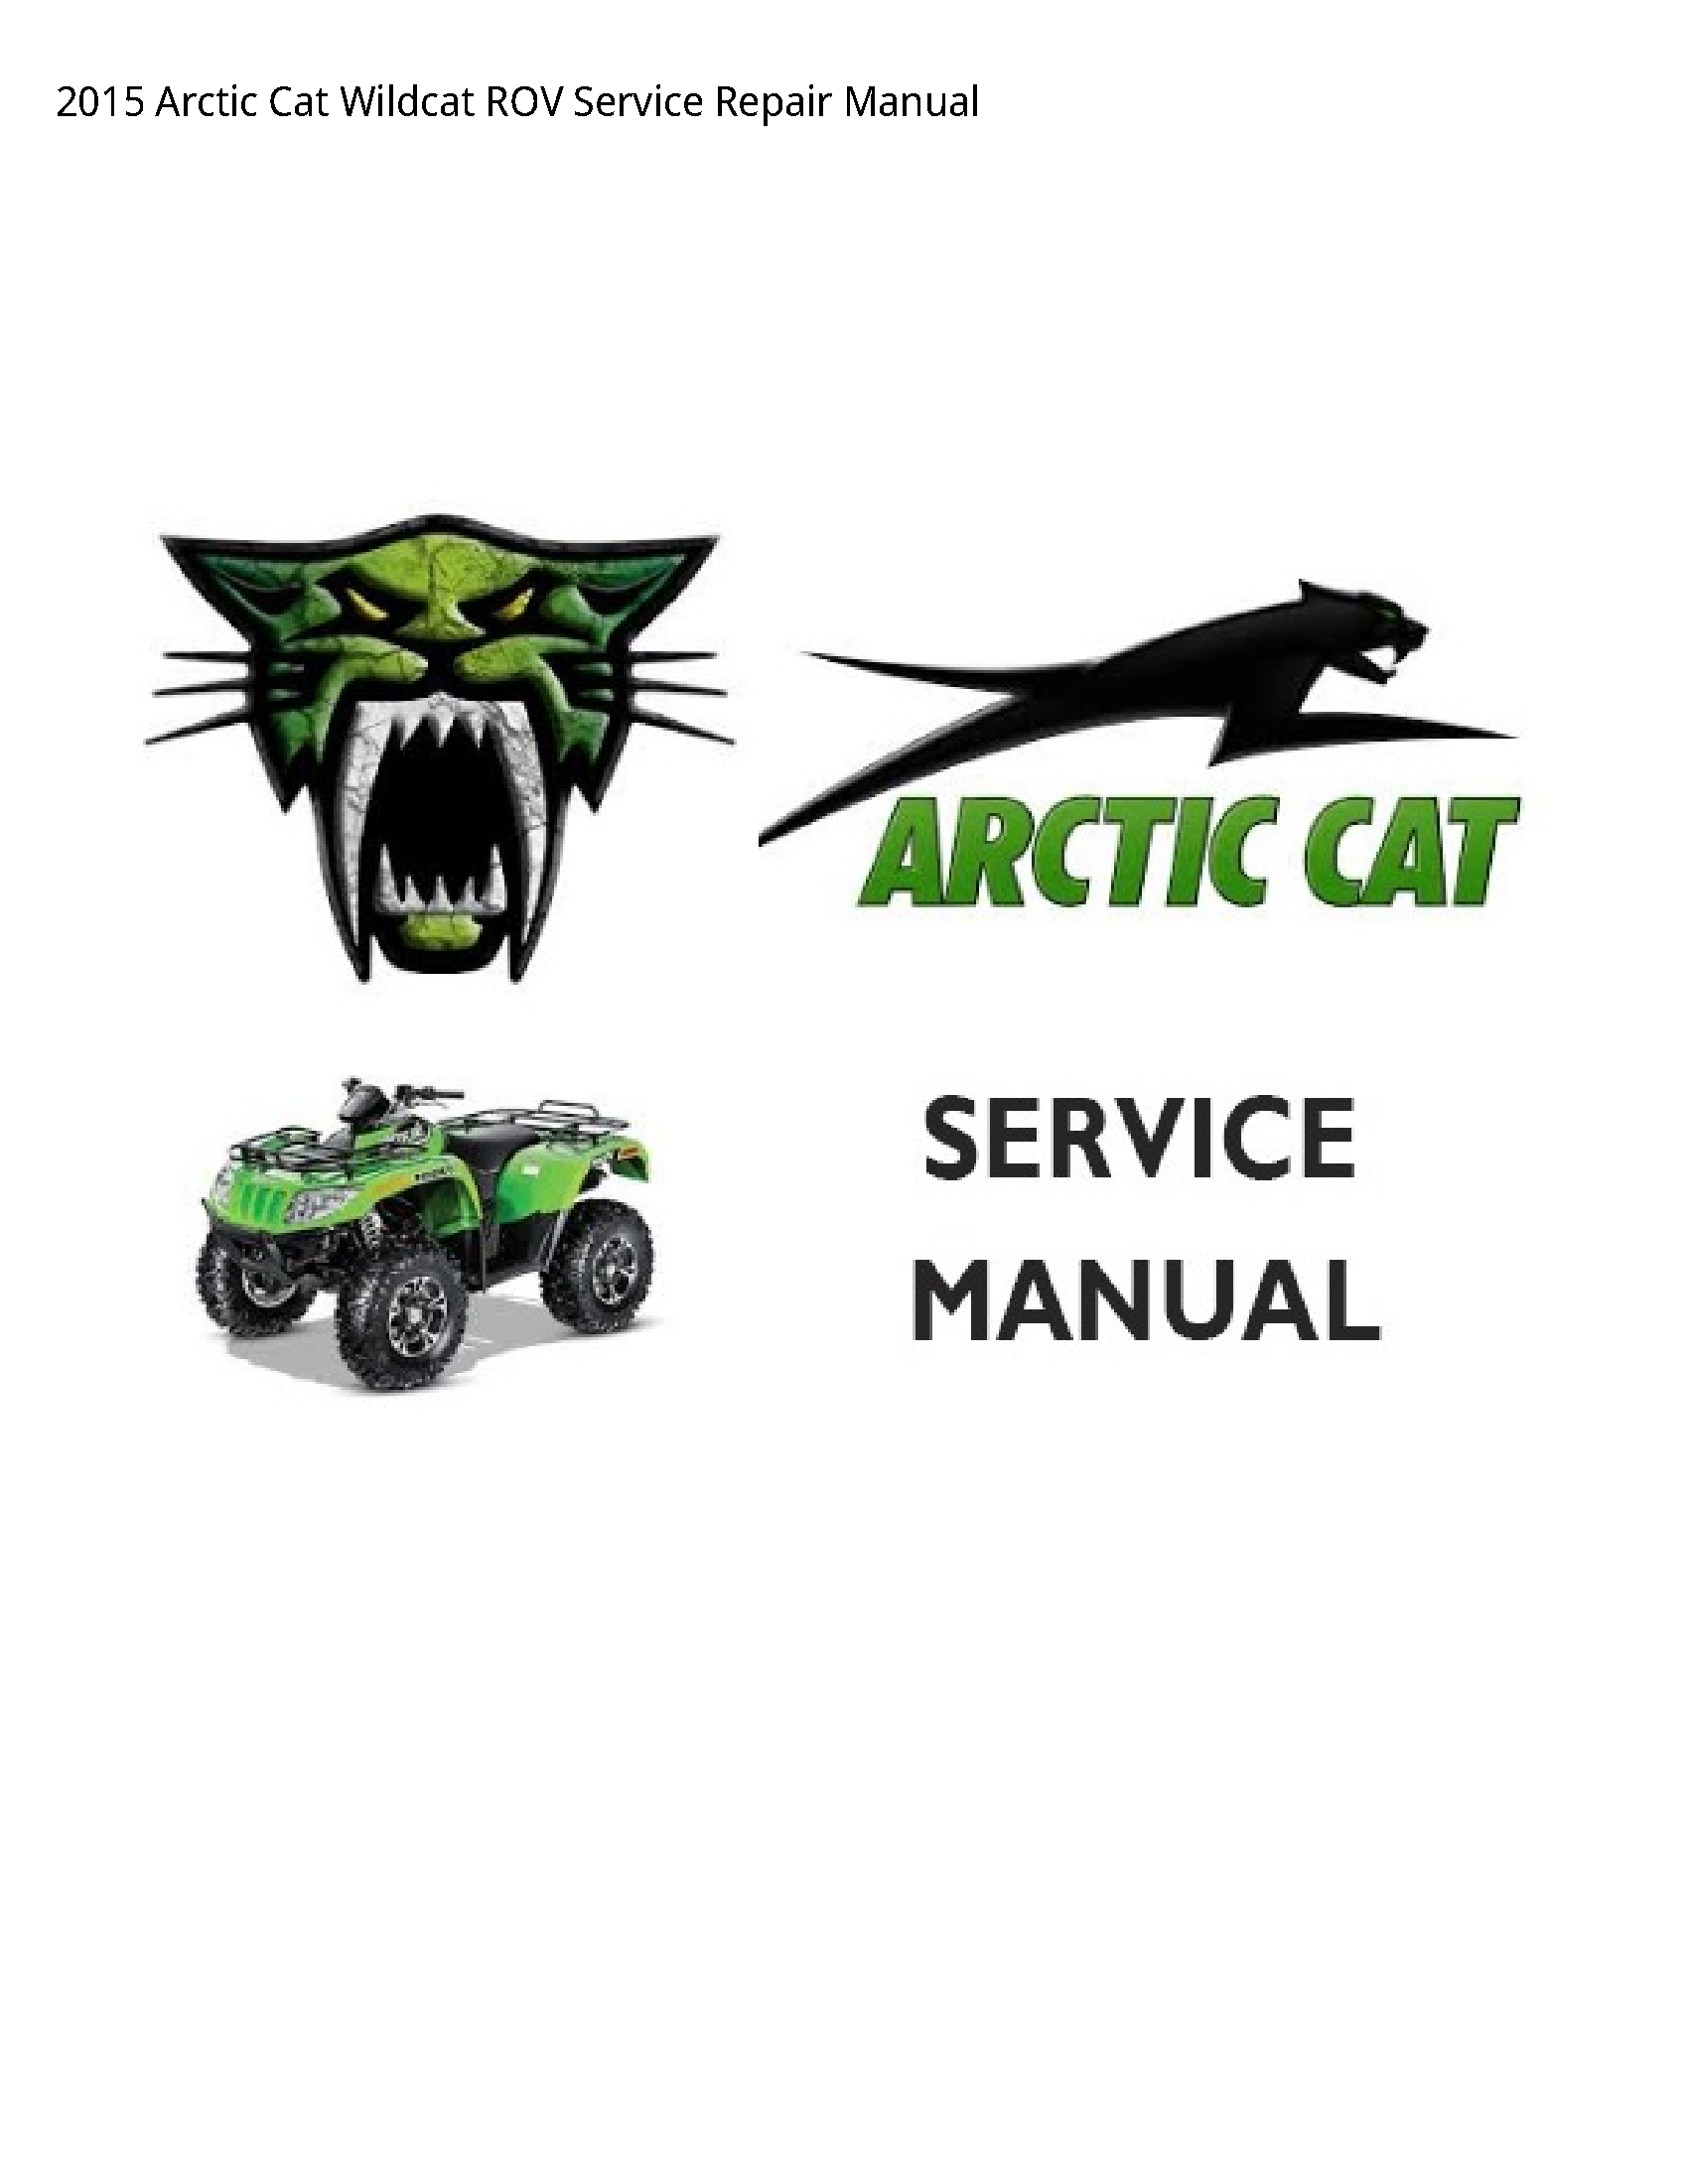 Arctic Cat Wildcat ROV manual